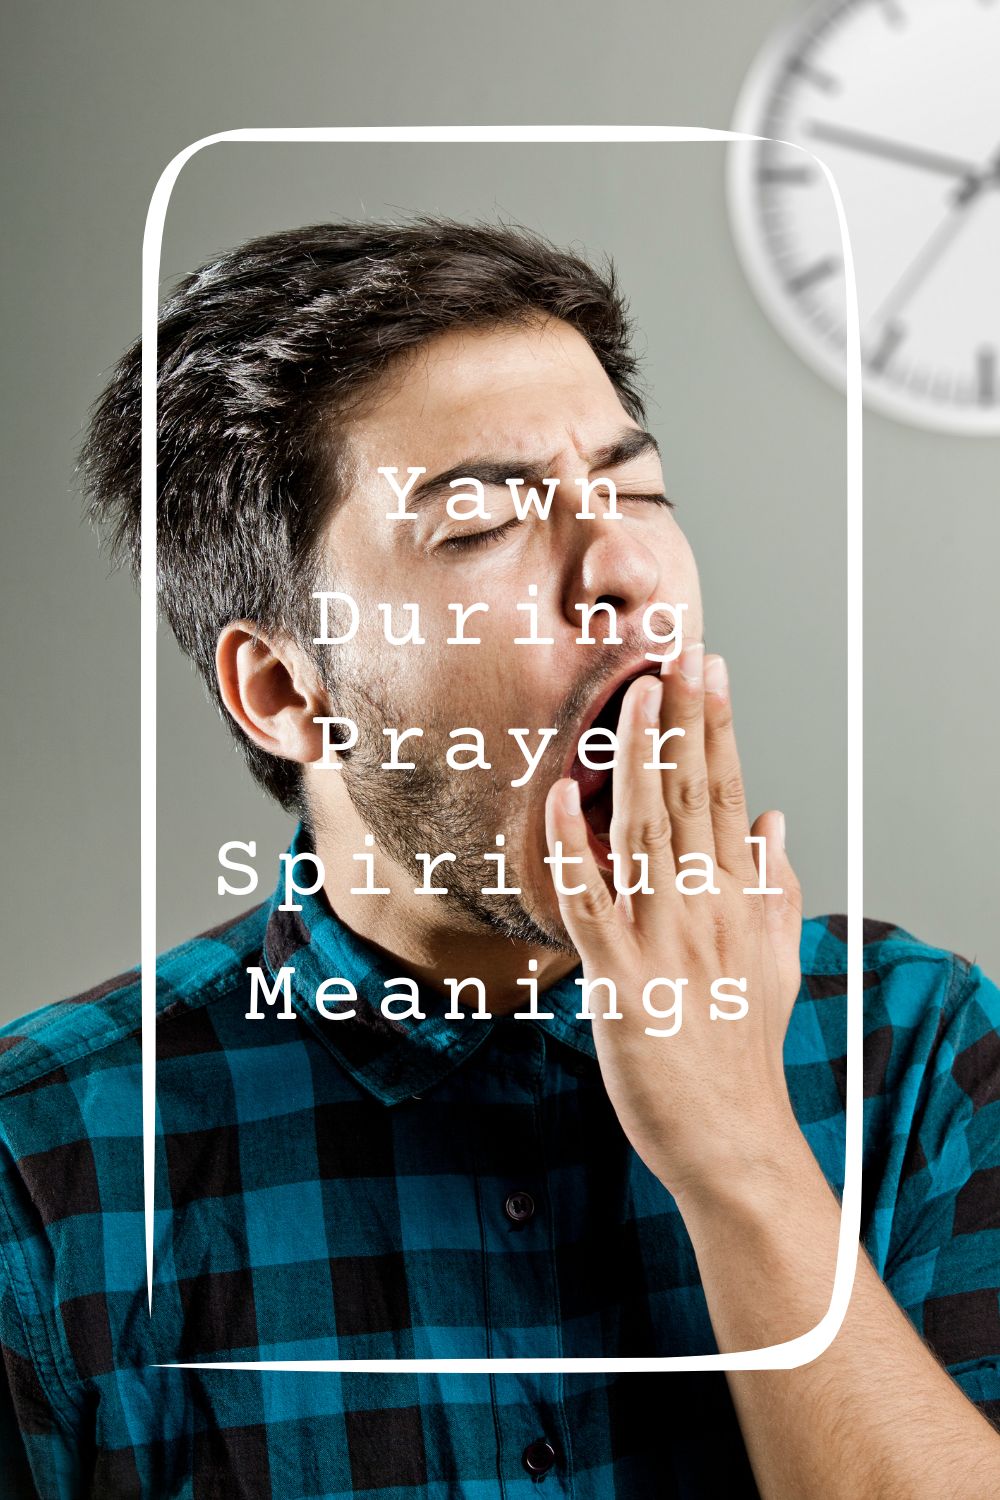 Yawn During Prayer Spiritual Meanings 2